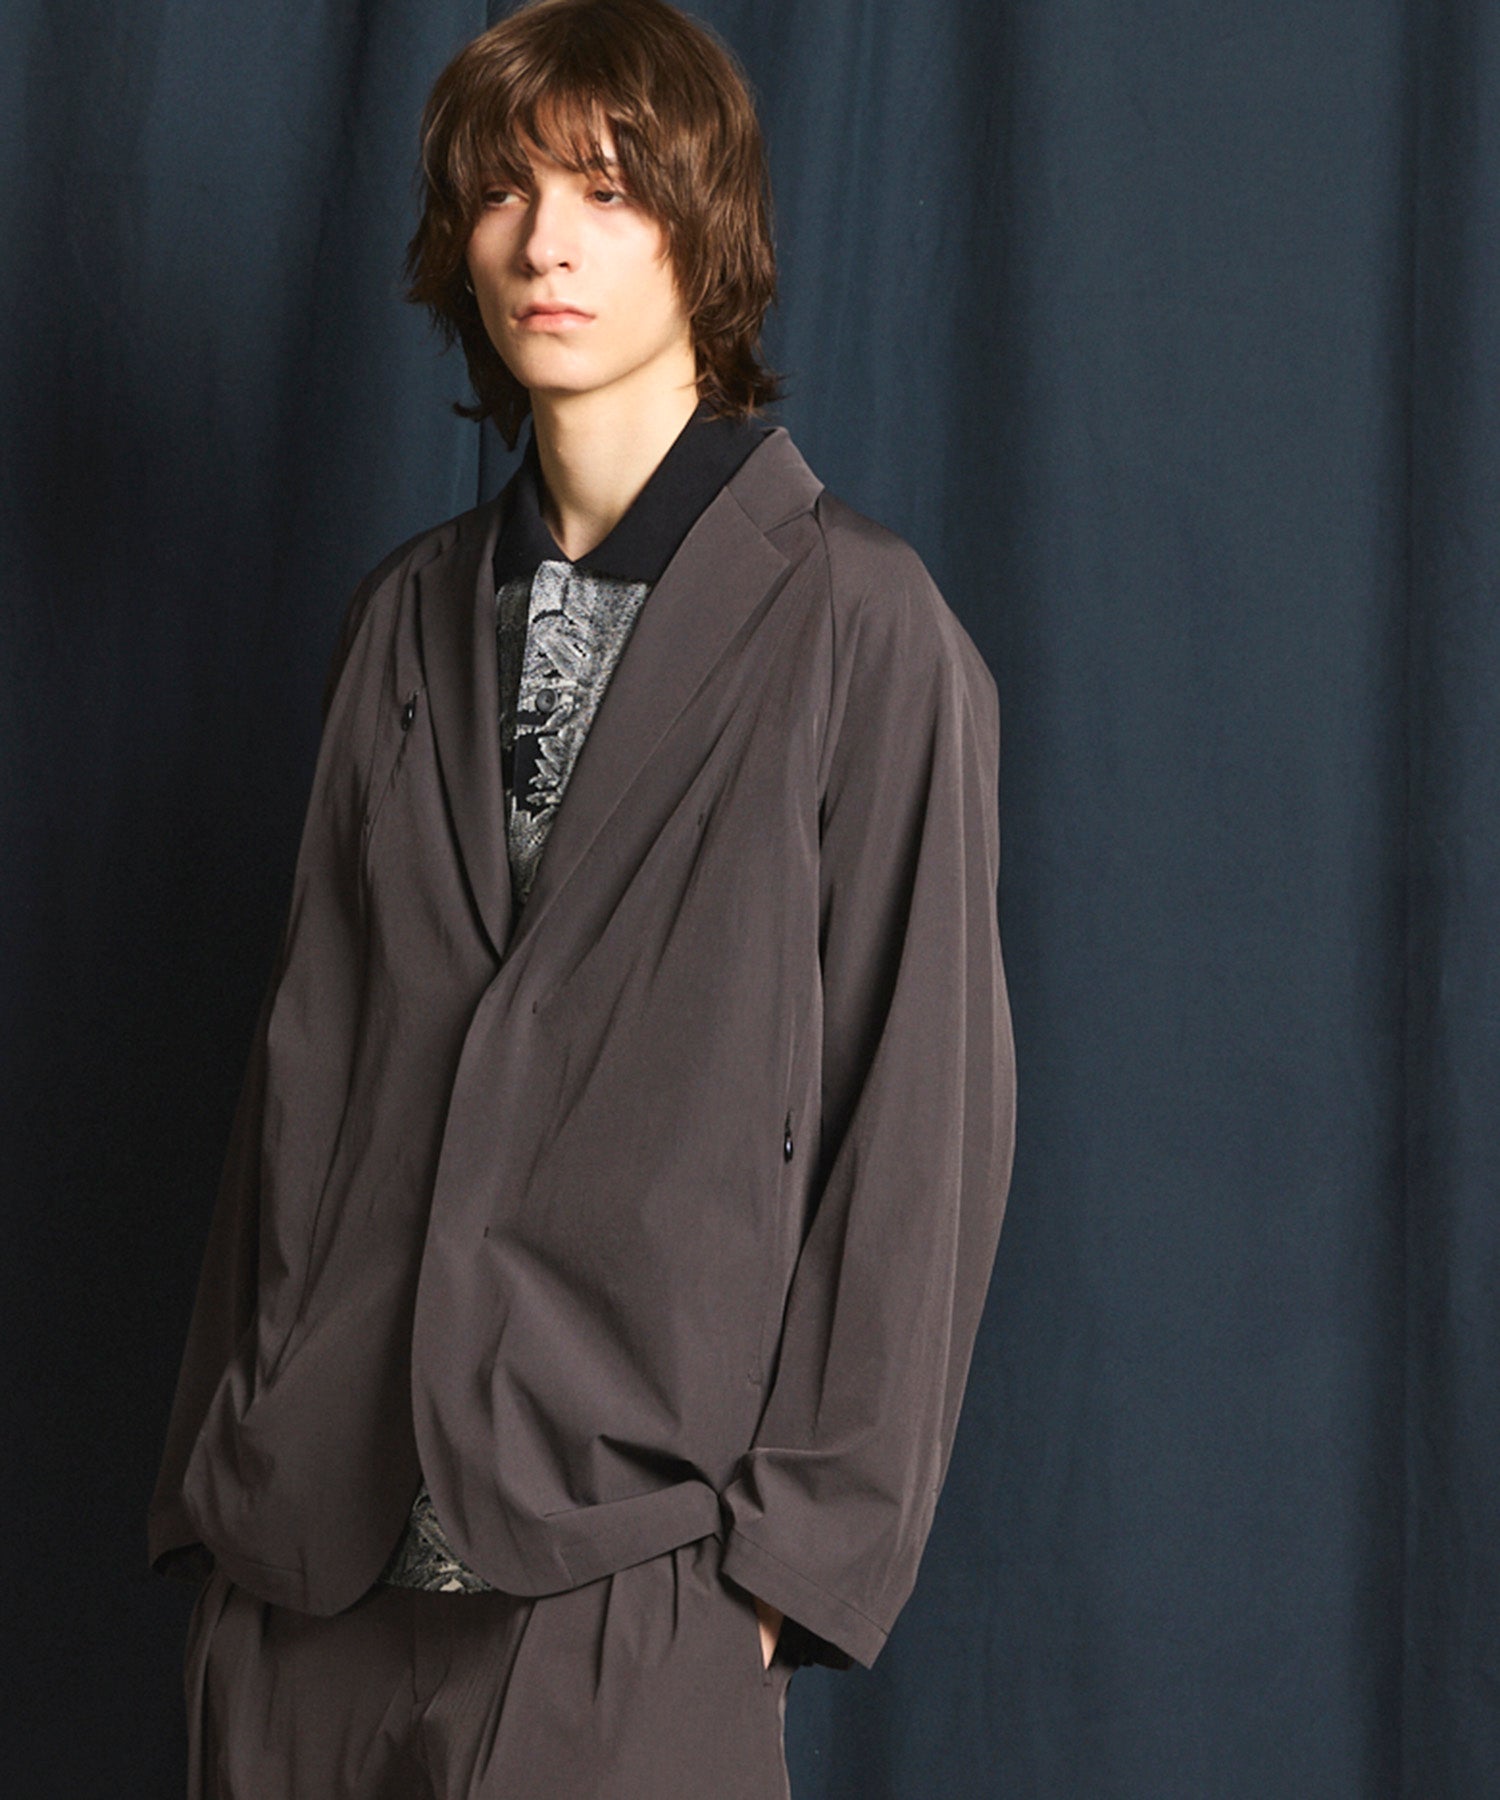 【SPORTS TECH HIGH SPEC LINE】Oversized Many Pockets Tailored Jacket